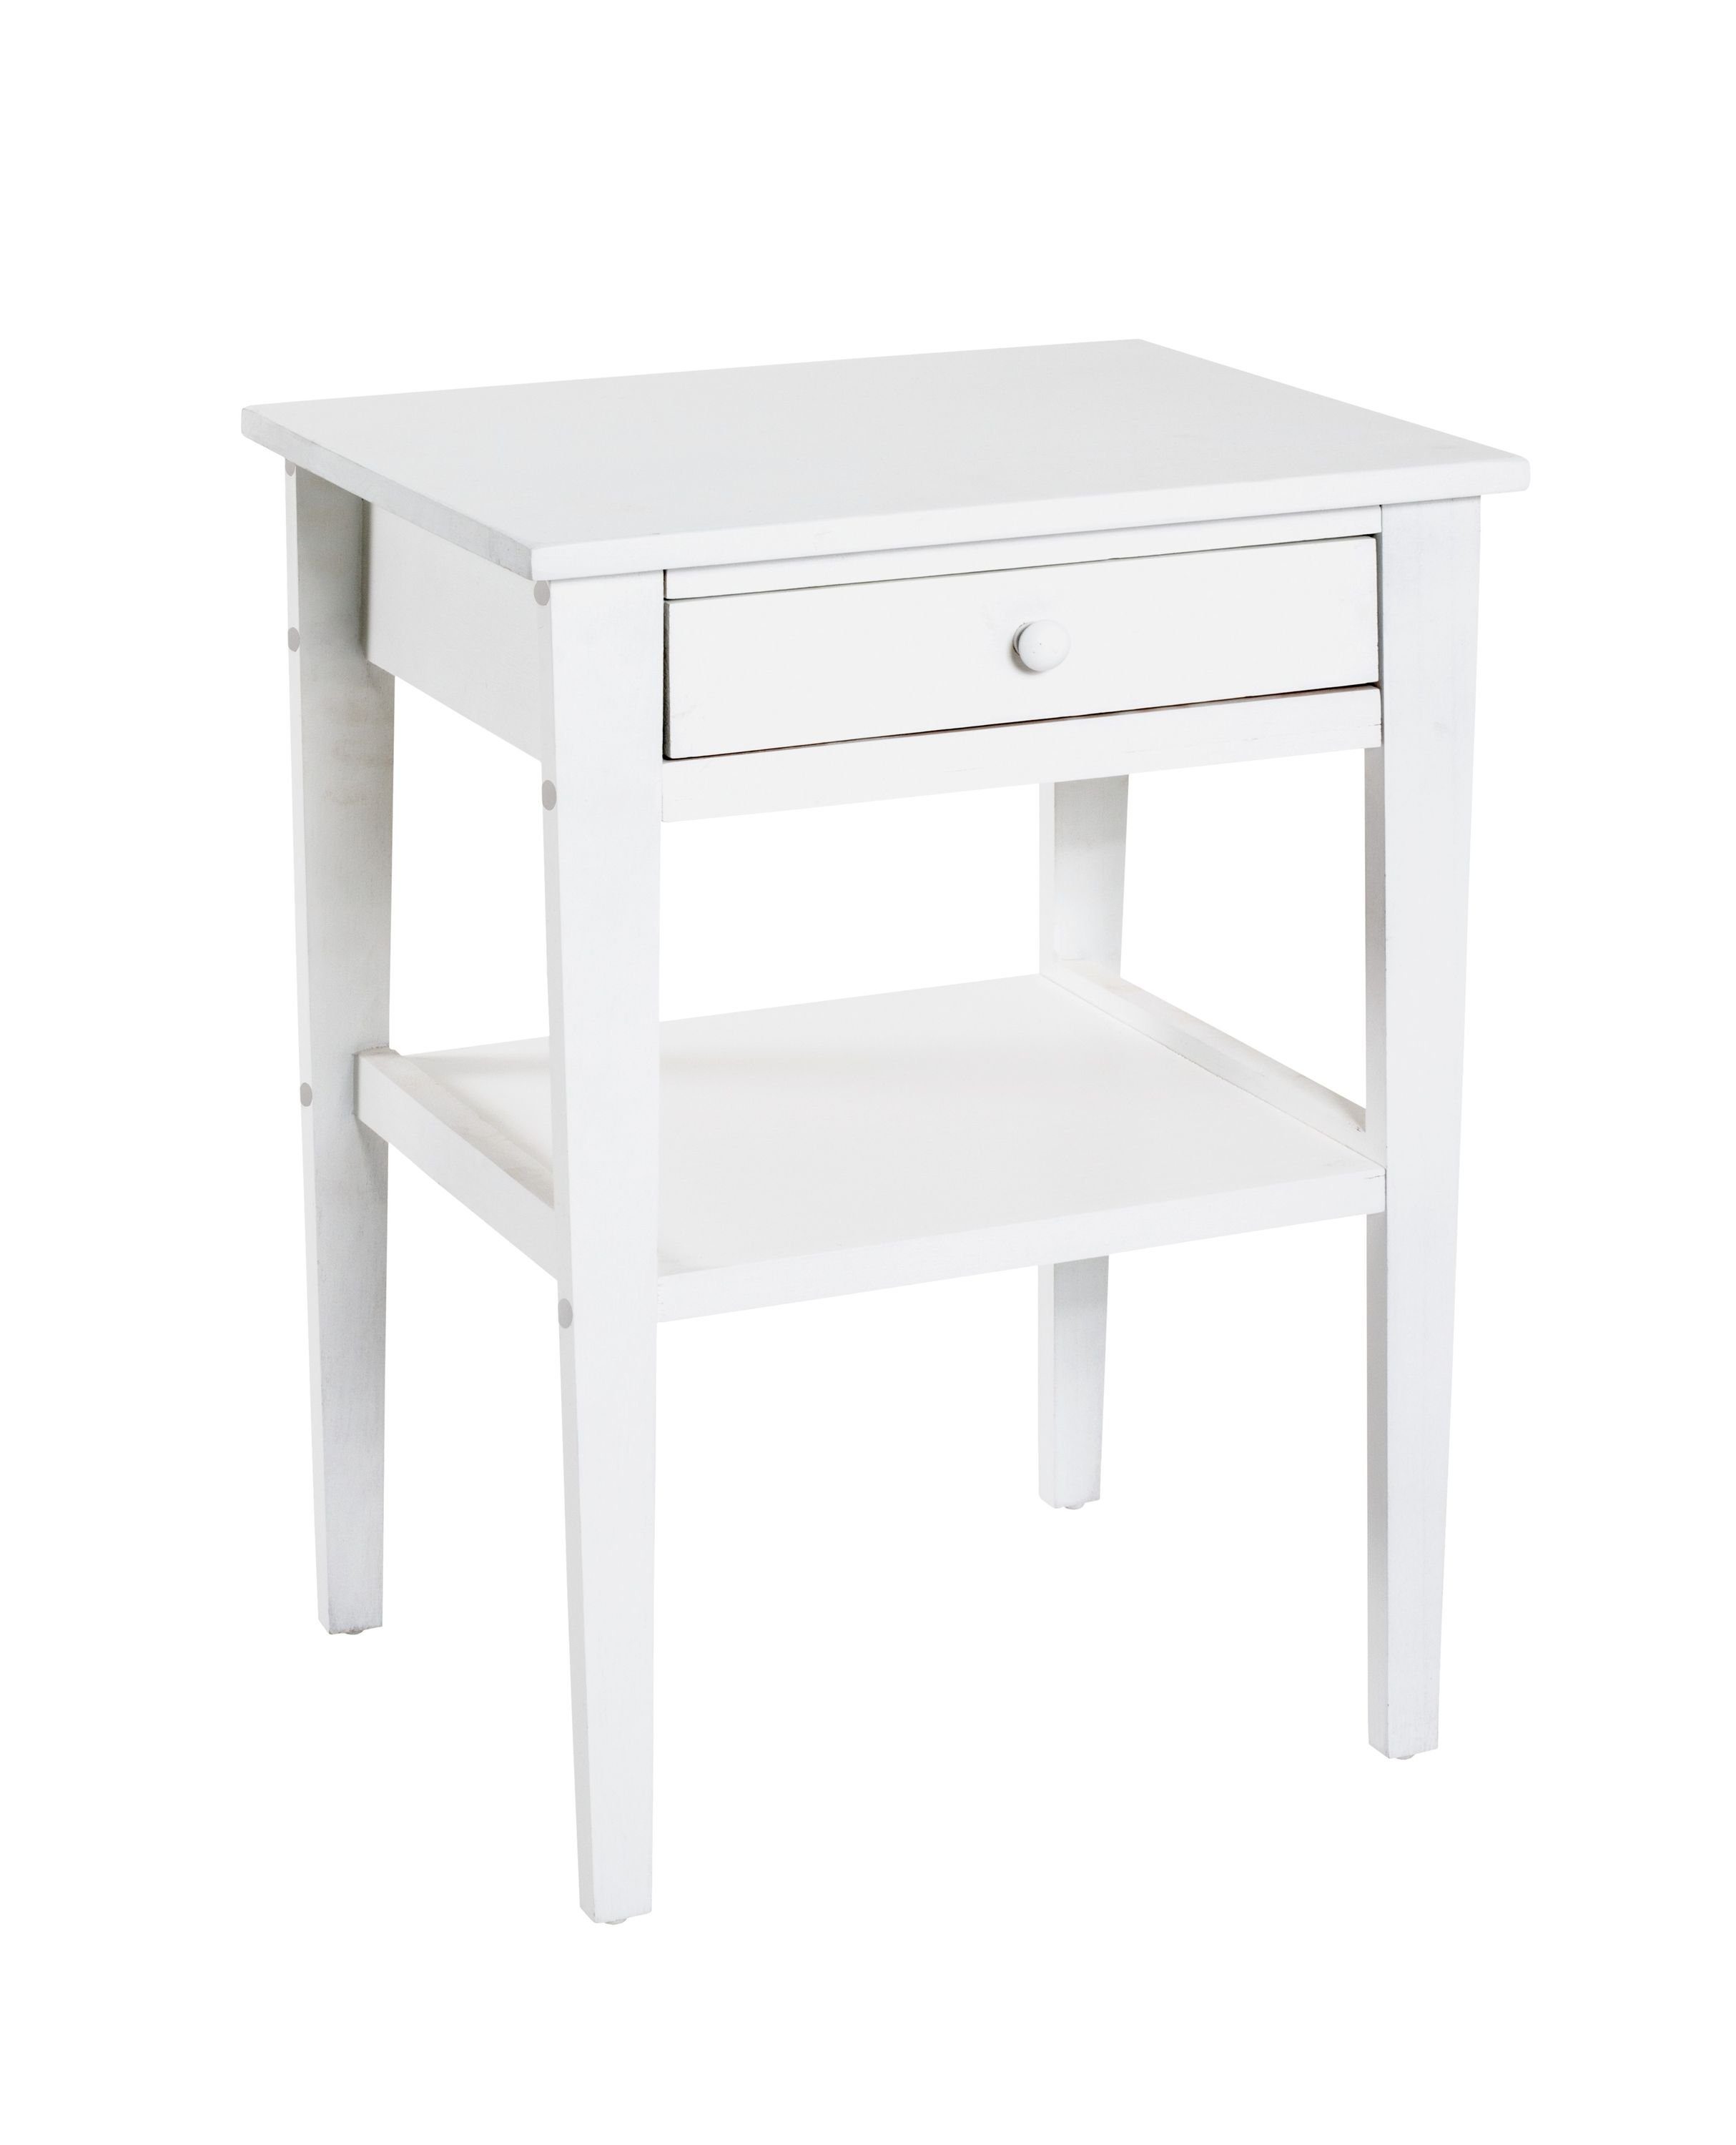 HAKU Beistelltisch Beistelltisch, HAKU Möbel Beistelltisch (BHT 46x60x35 cm) BHT 46x60x35 cm weiß